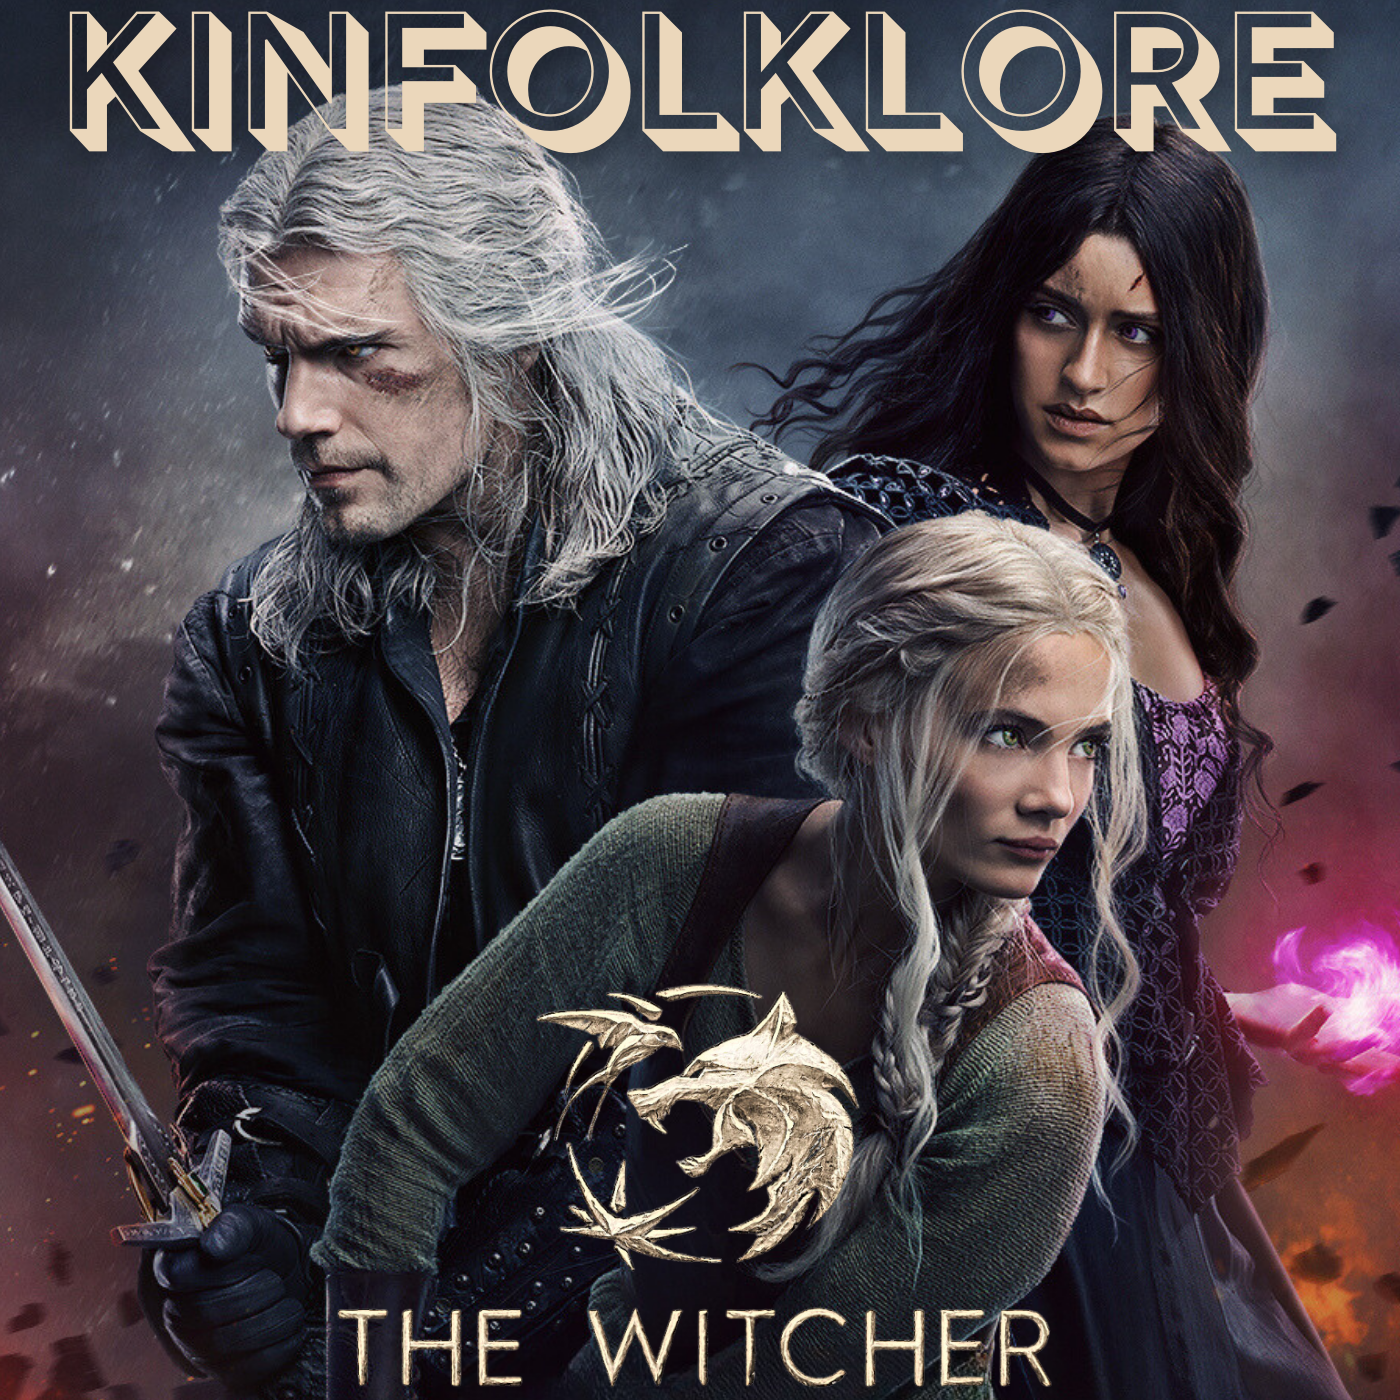 S11 Ep5: Kinfolklore: Witcher Season 3 (Episodes 7&8)